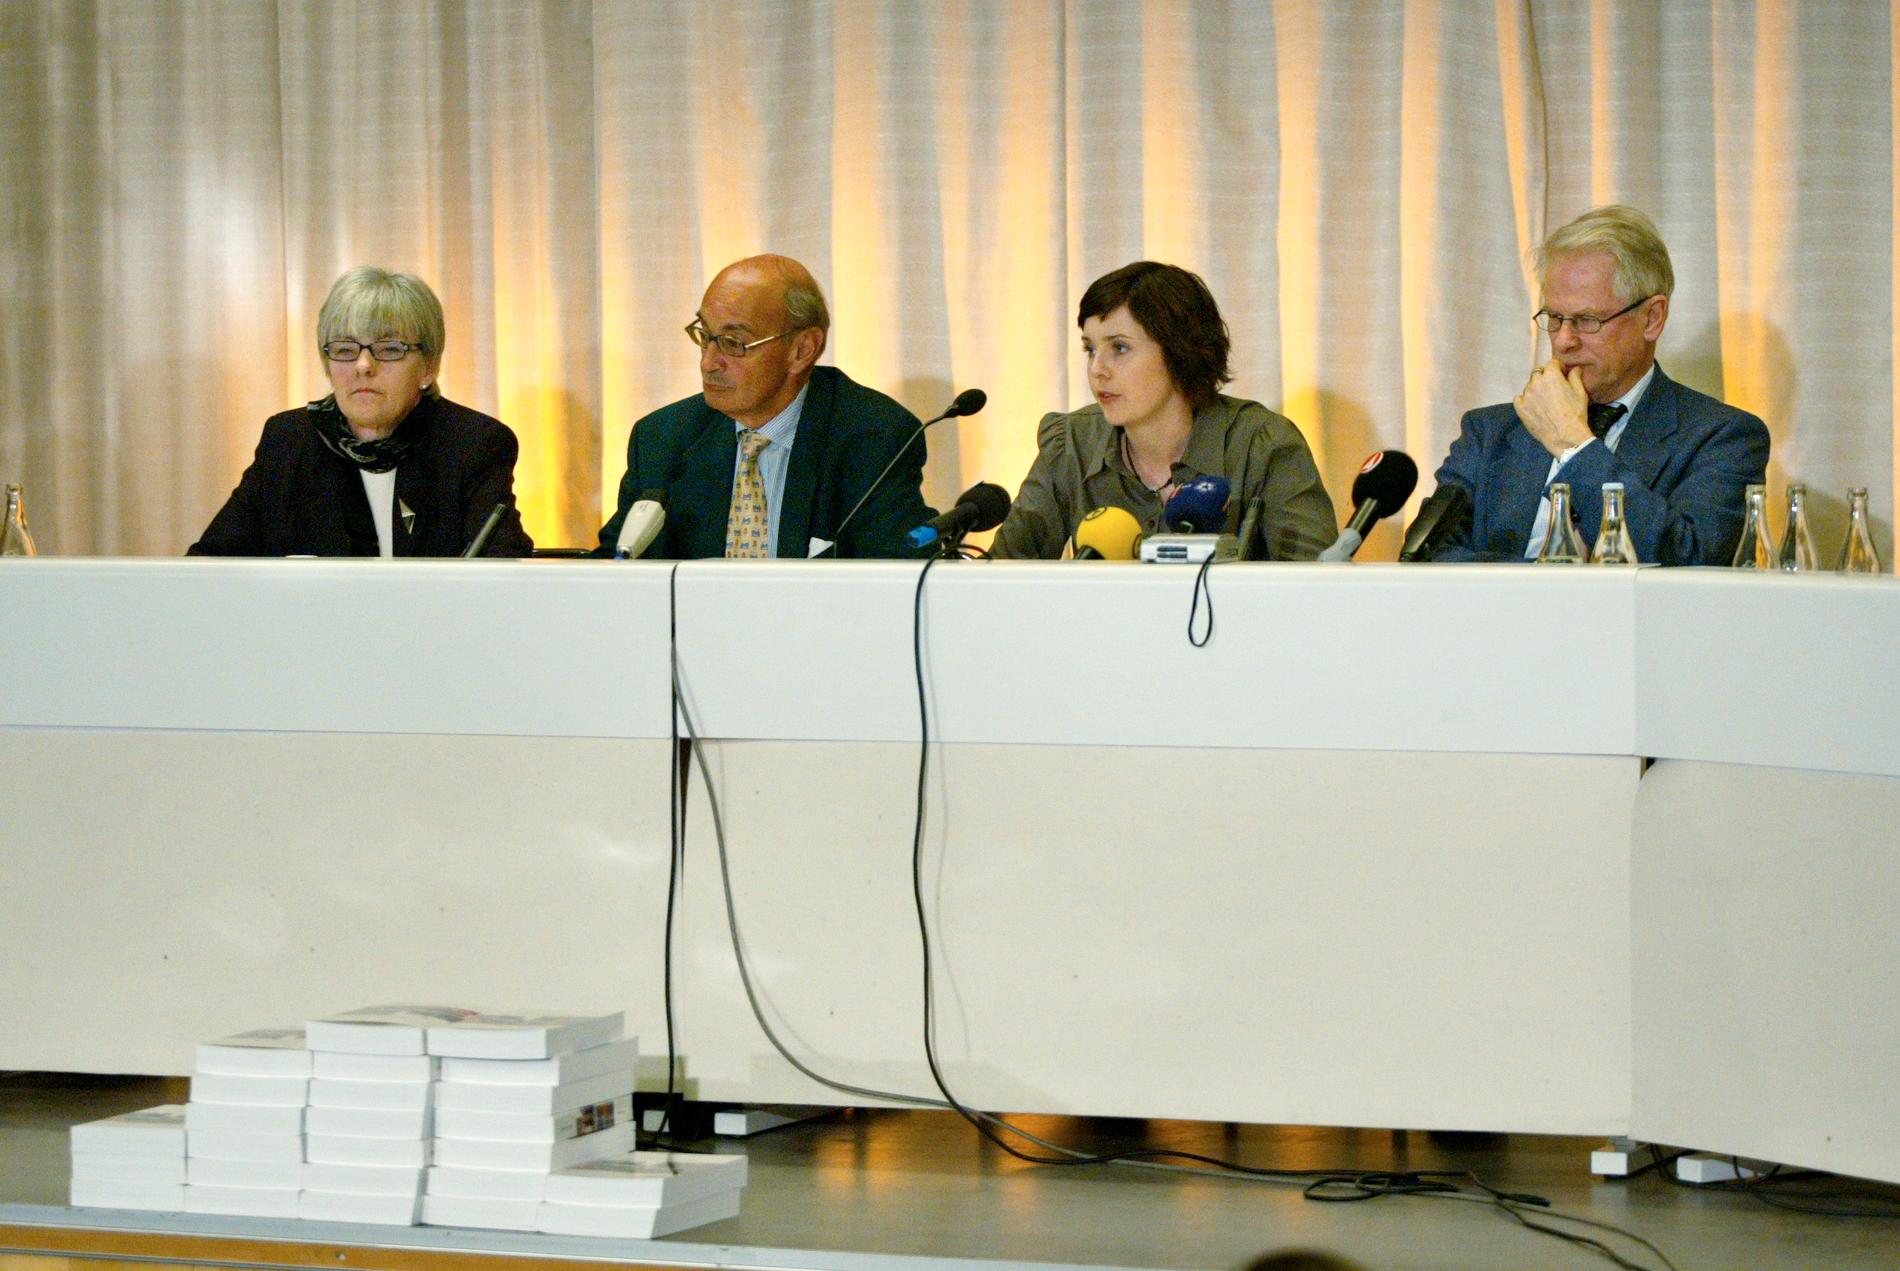 Göteborgskommittén presenterade sin slutrapport. Från vänster Marianne Eliason, Ulf Adelsohn, Malin Berggren och Ingvar Carlsson.